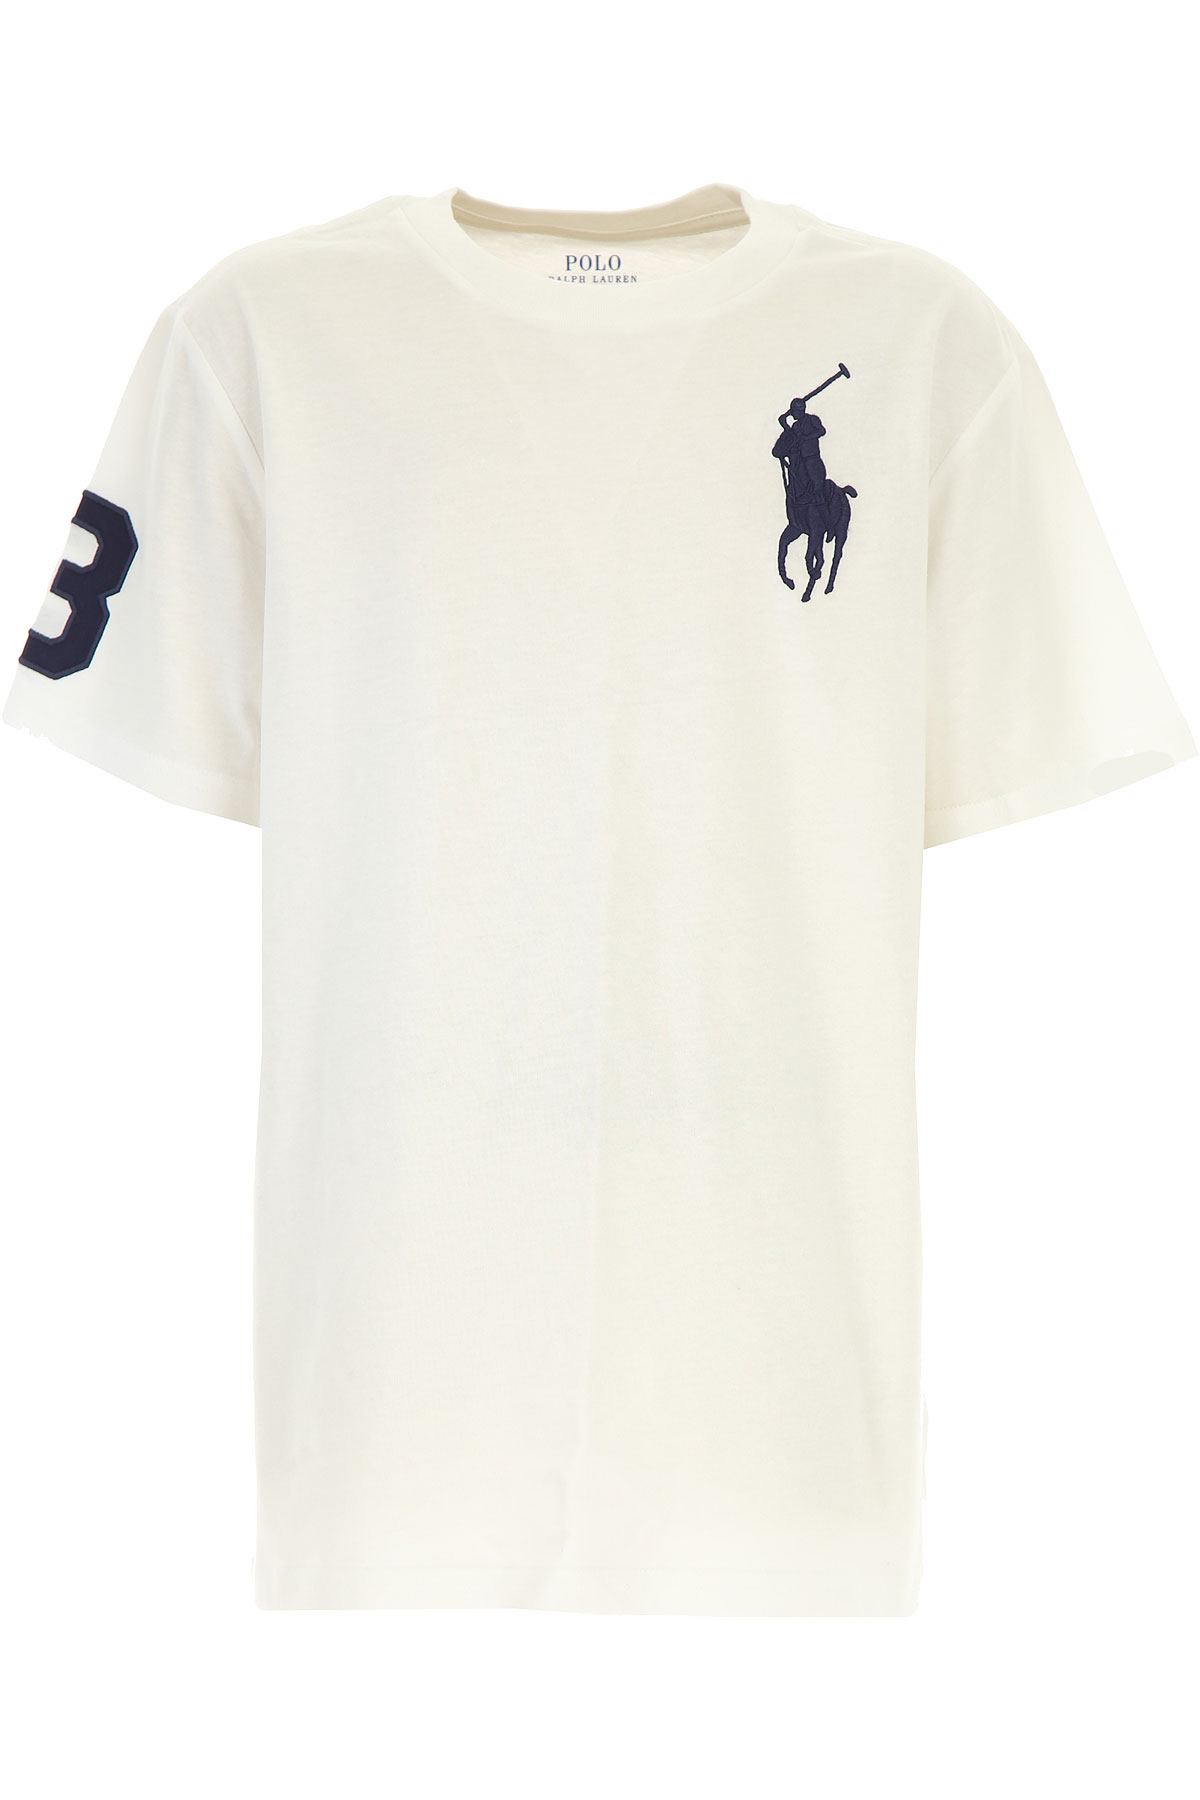 Ralph Lauren Kinder T-Shirt für Jungen Günstig im Sale, Weiss, Baumwolle, 2017, L M XL